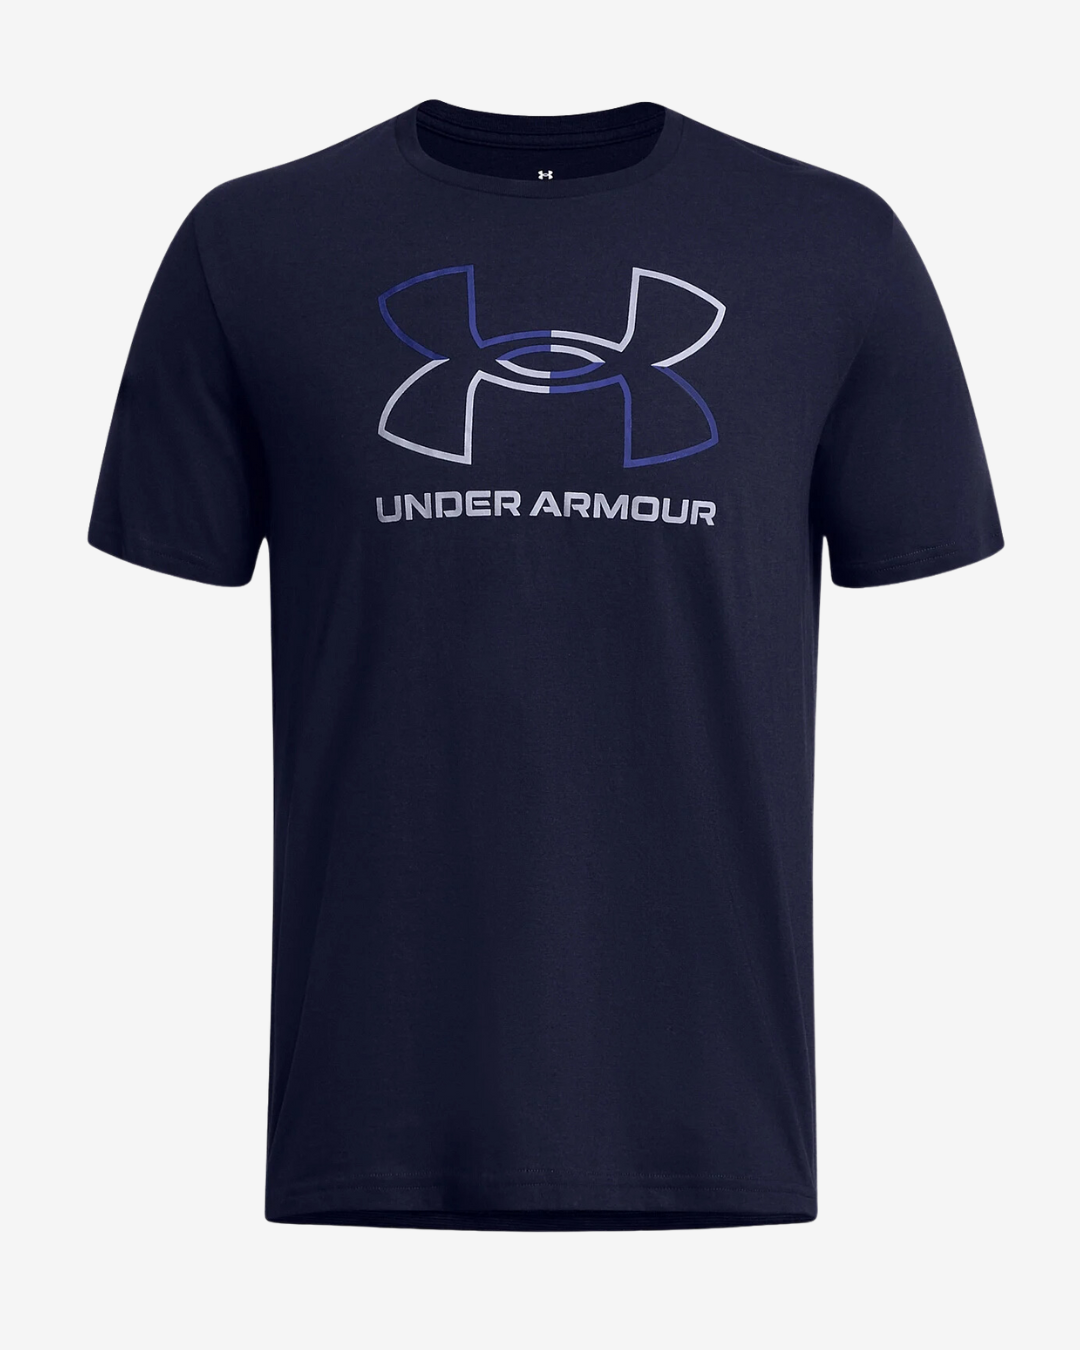 Billede af Under Armour GL Foundation update t-shirt - Navy - Str. S - Modish.dk